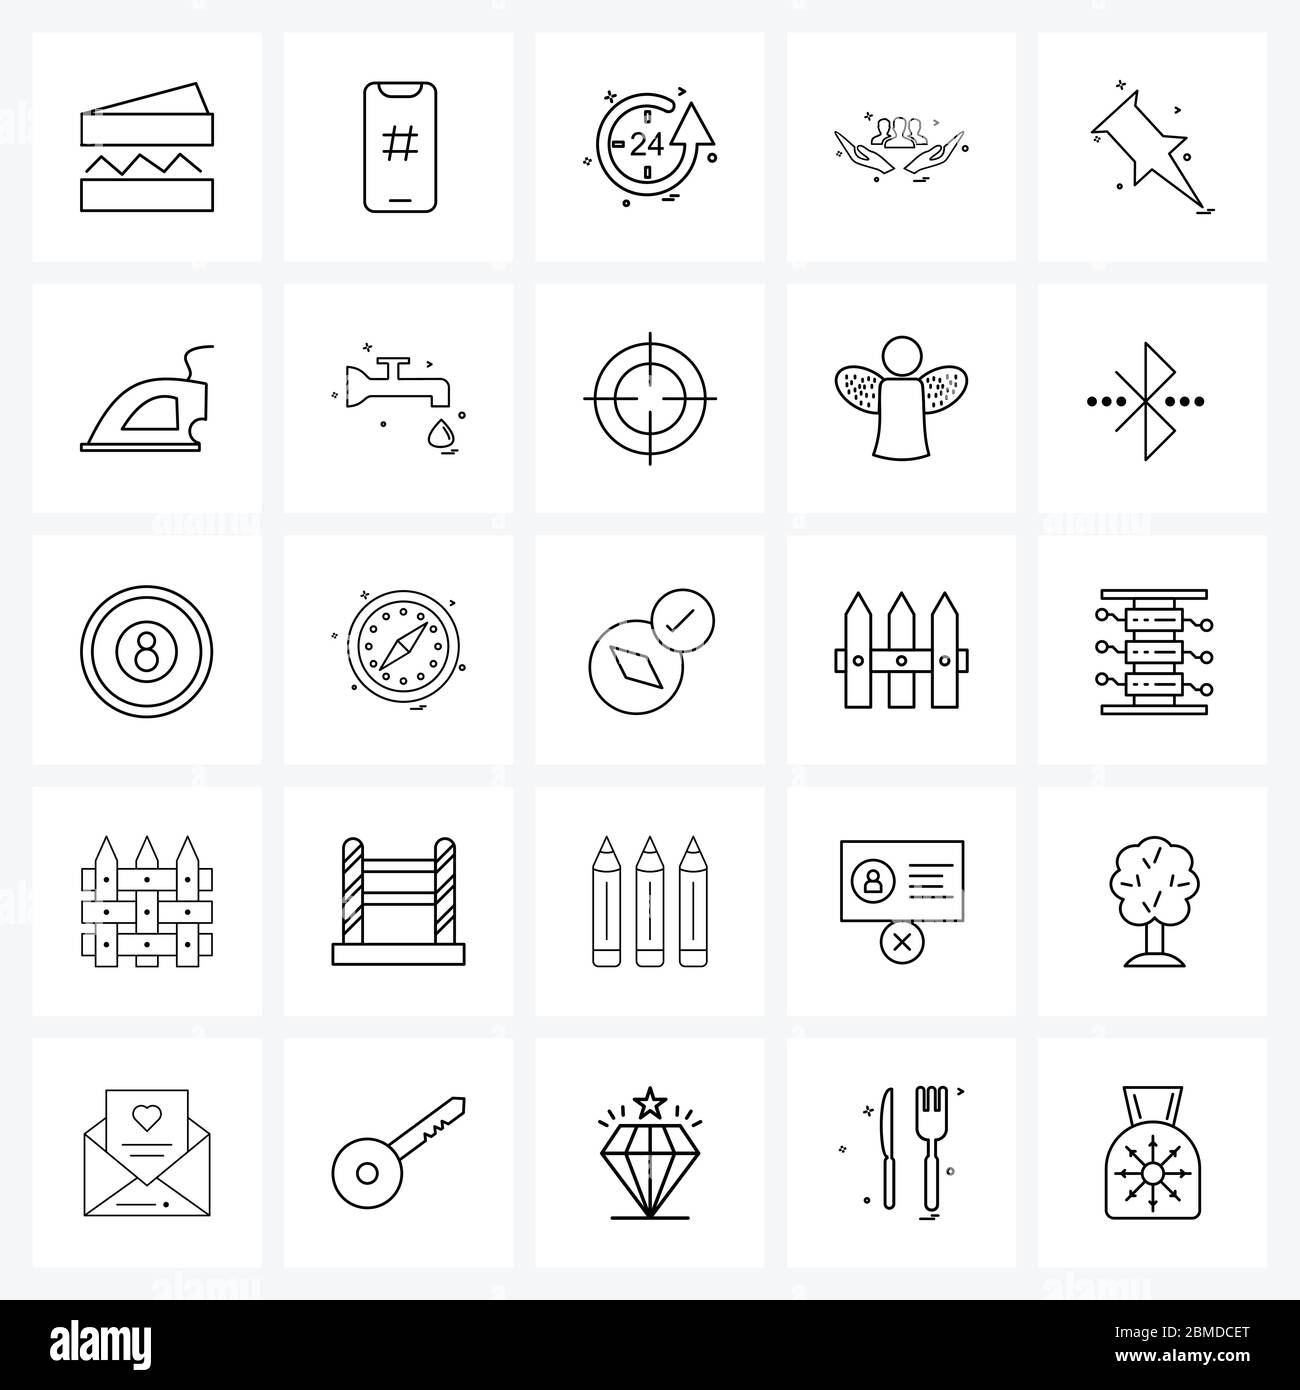 25 icône de ligne d'interface ensemble de symboles modernes sur la broche, le groupe, l'heure, les mains, les heures Illustration du vecteur Illustration de Vecteur